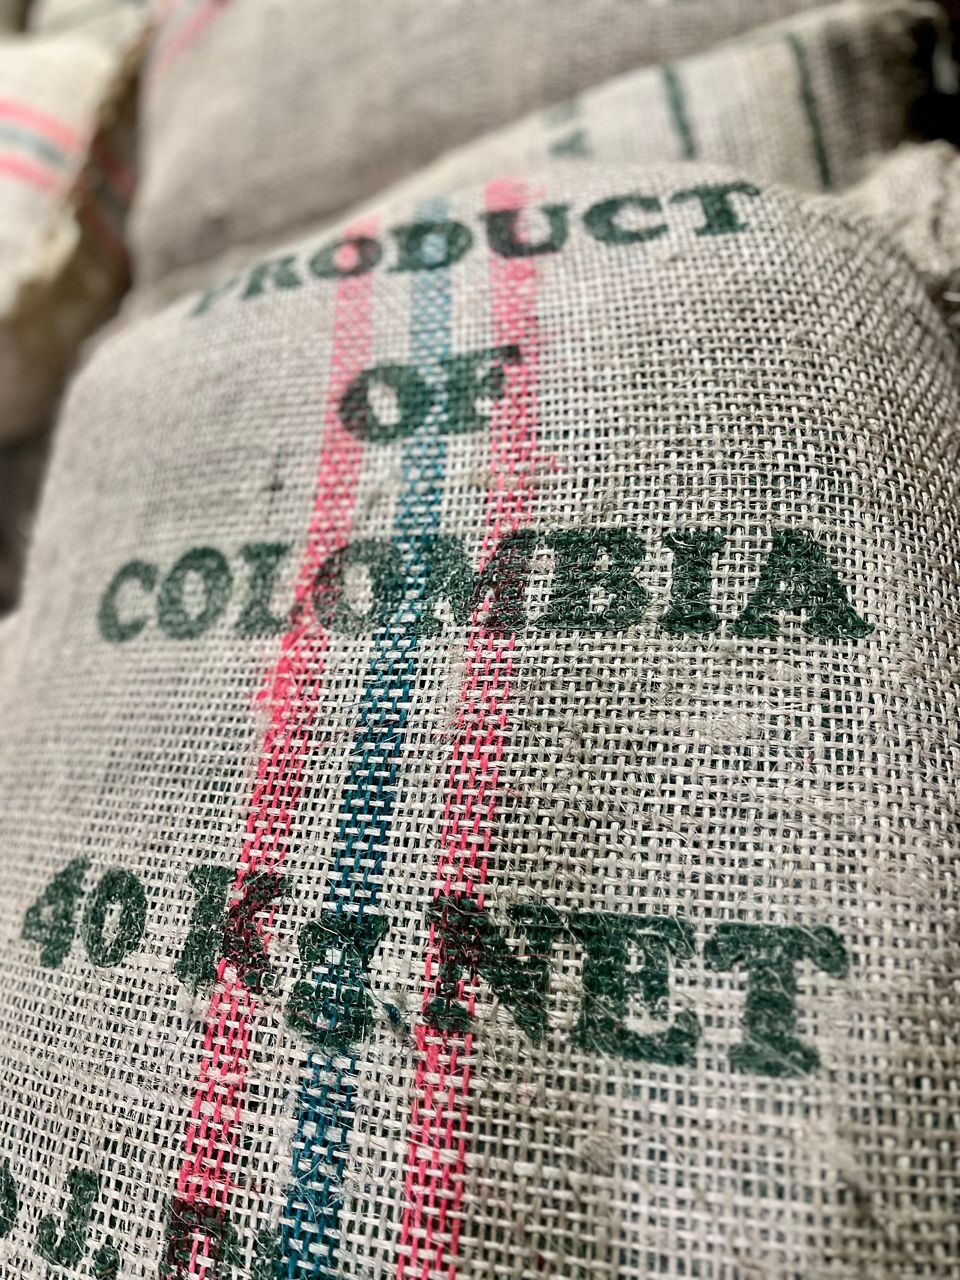 A 40 kilogram bag of coffee prepared for shipment at Hacienda El Roble in Los Santos, Santander, Colombia.